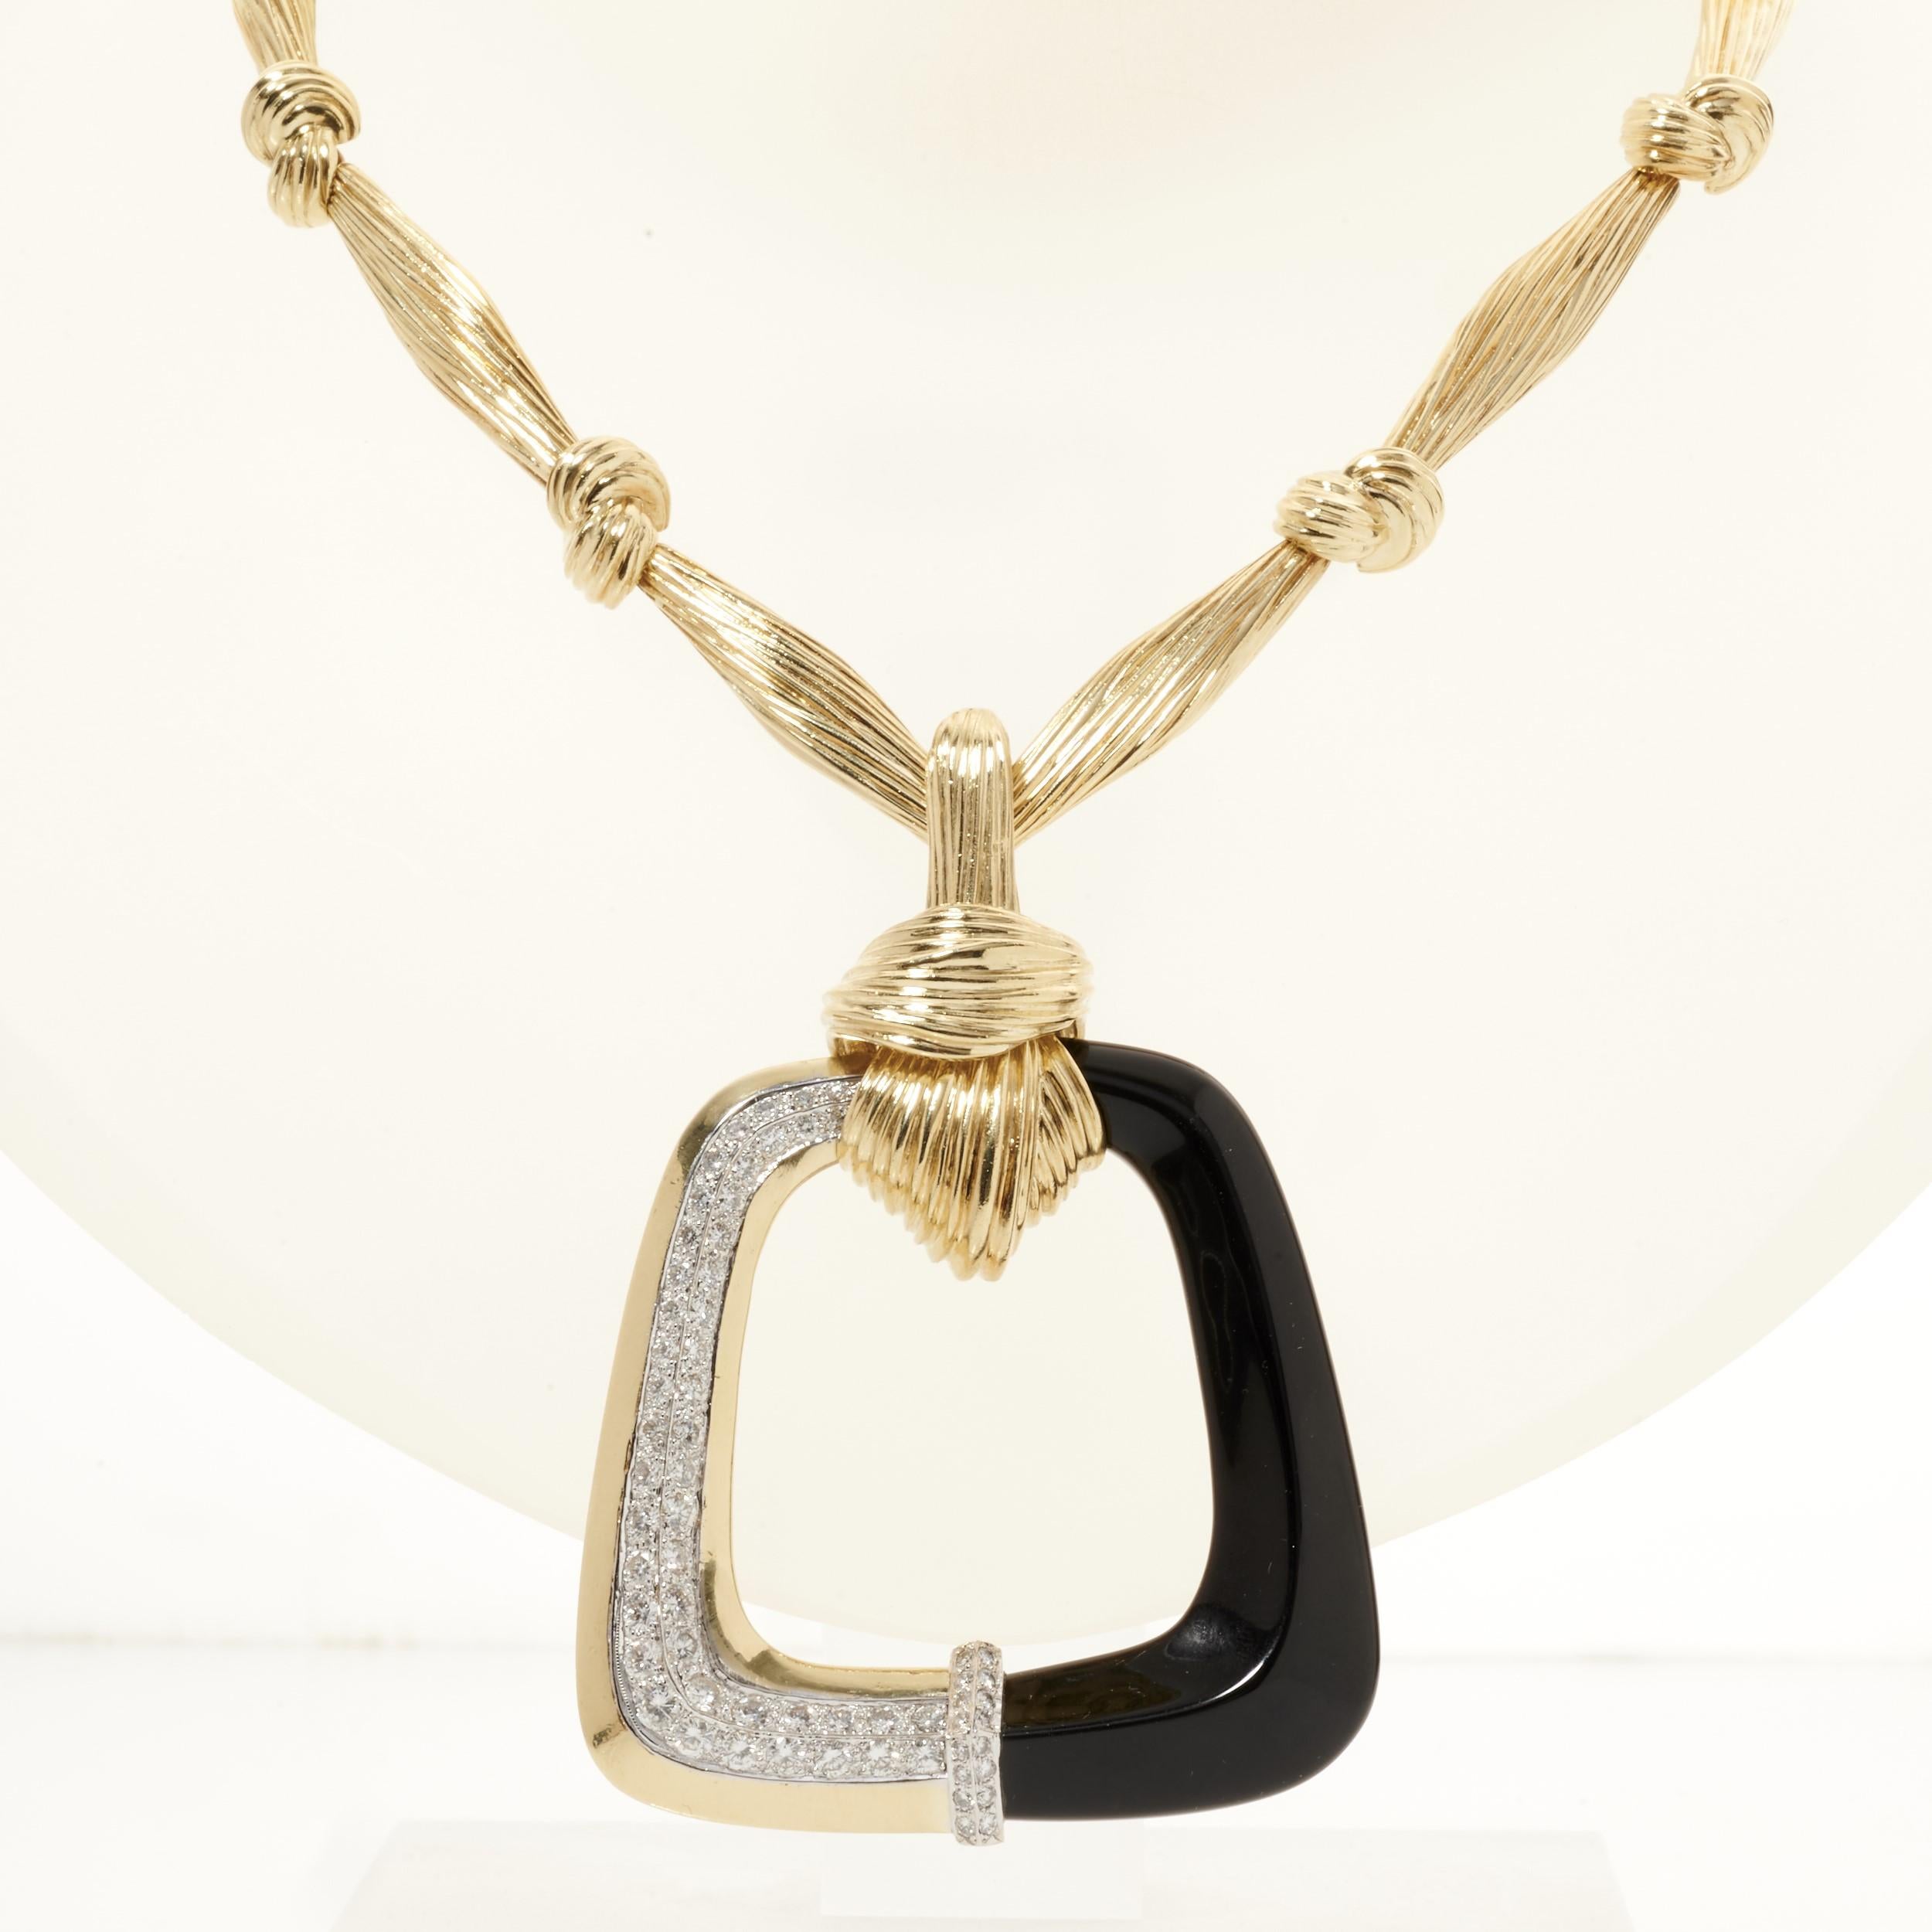 Un superbe collier La Triomphe en or avec un pendentif carré ouvert orné d'onyx noir envoûtant et de diamants éblouissants. 

Le pendentif est composé d'or jaune 18 carats, d'onyx noir et de 62 diamants ronds. Ils pèsent environ 2,50 carats et ont